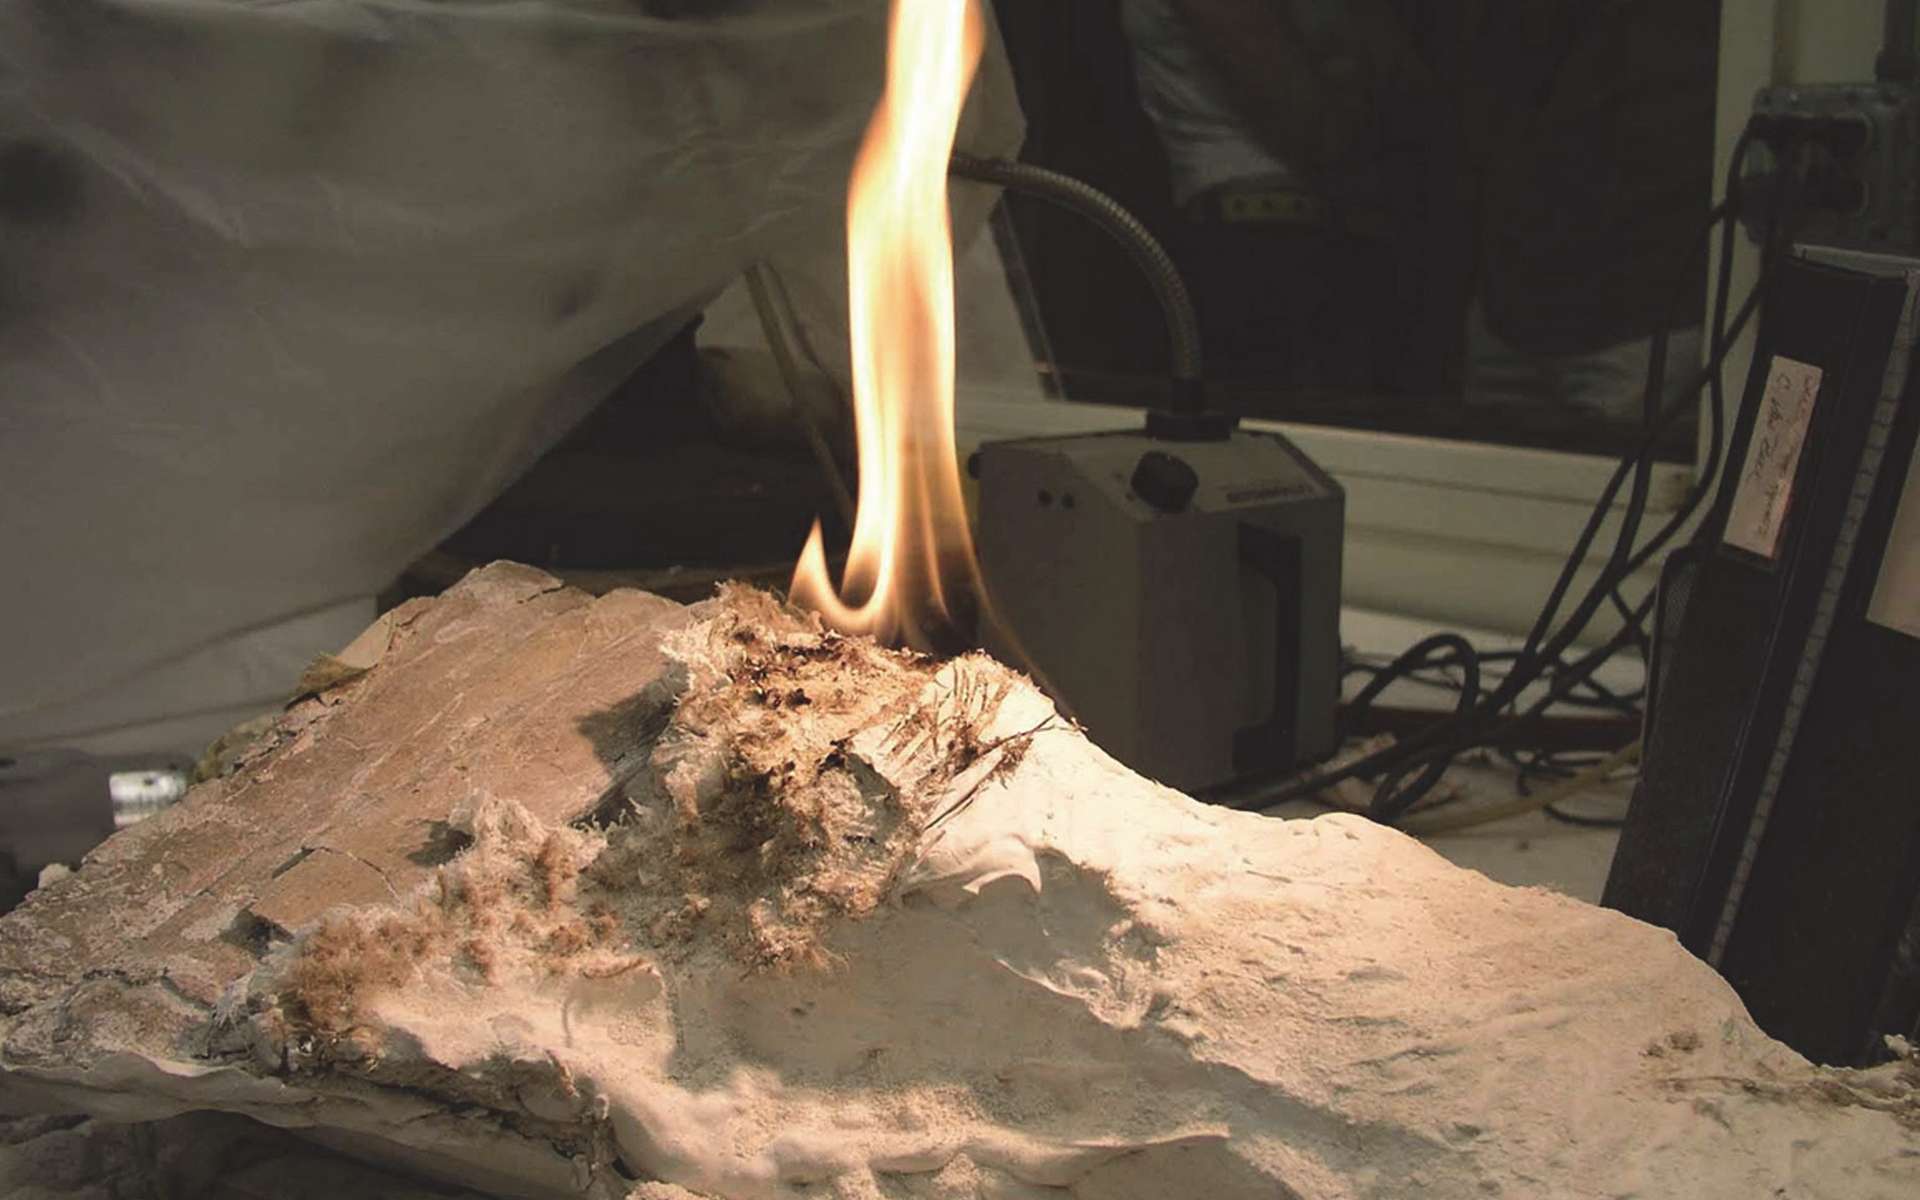 Des paléontologues ont eu l'idée de mettre le feu à la coque de plâtre et de jute qui protège les fossiles pendant leur transport pour les en dégager sans les endommager. © Brown and Holliday, 2021